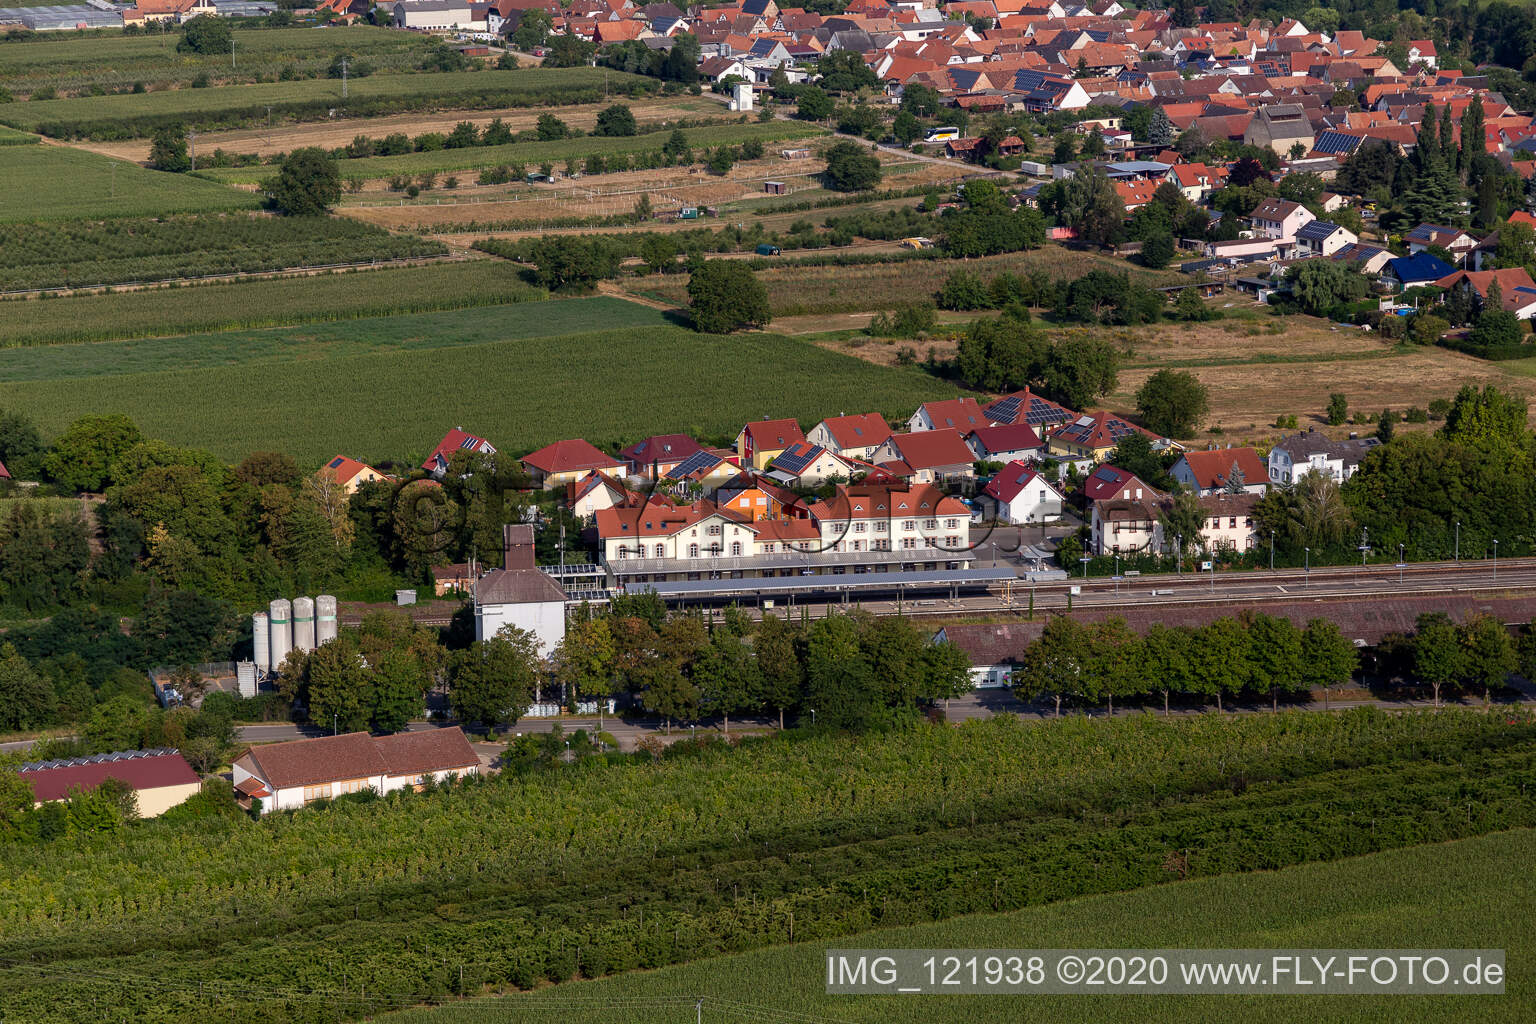 Luftbild von Bahnhof in Winden im Bundesland Rheinland-Pfalz, Deutschland